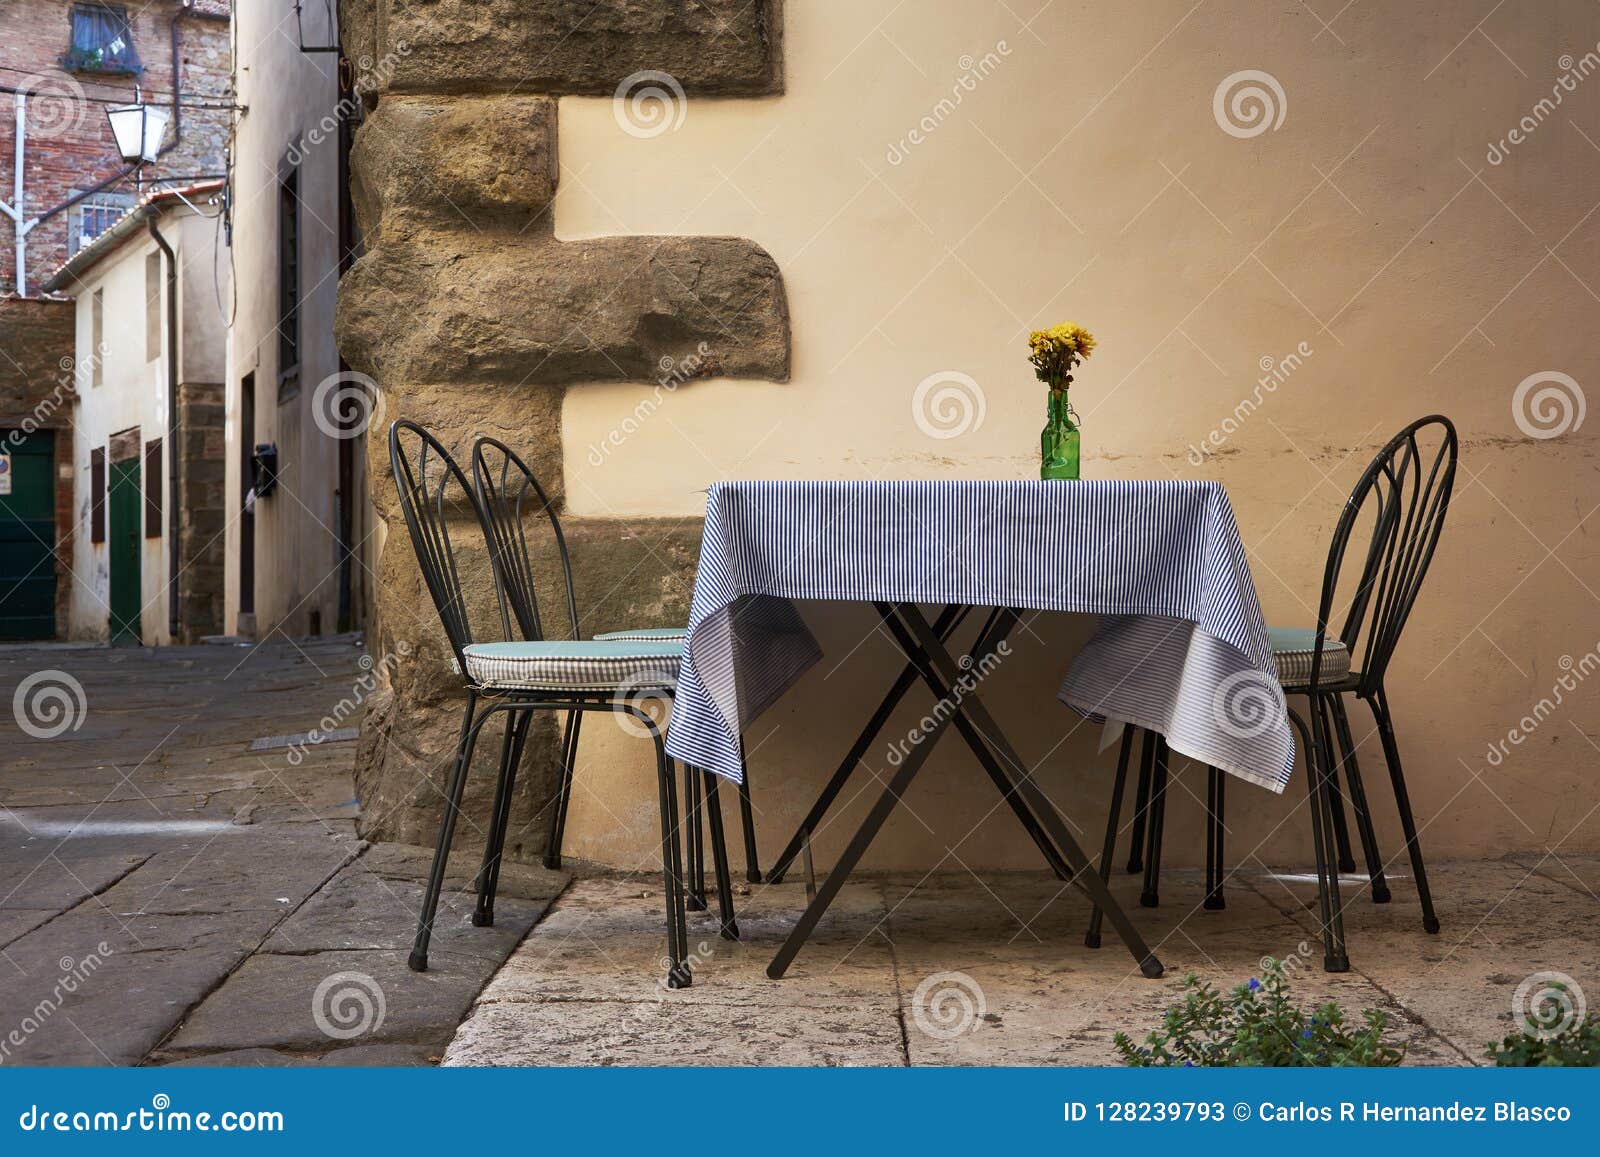 Romantic Dinner in the Street Stock Image - Image of dinner, cuisine